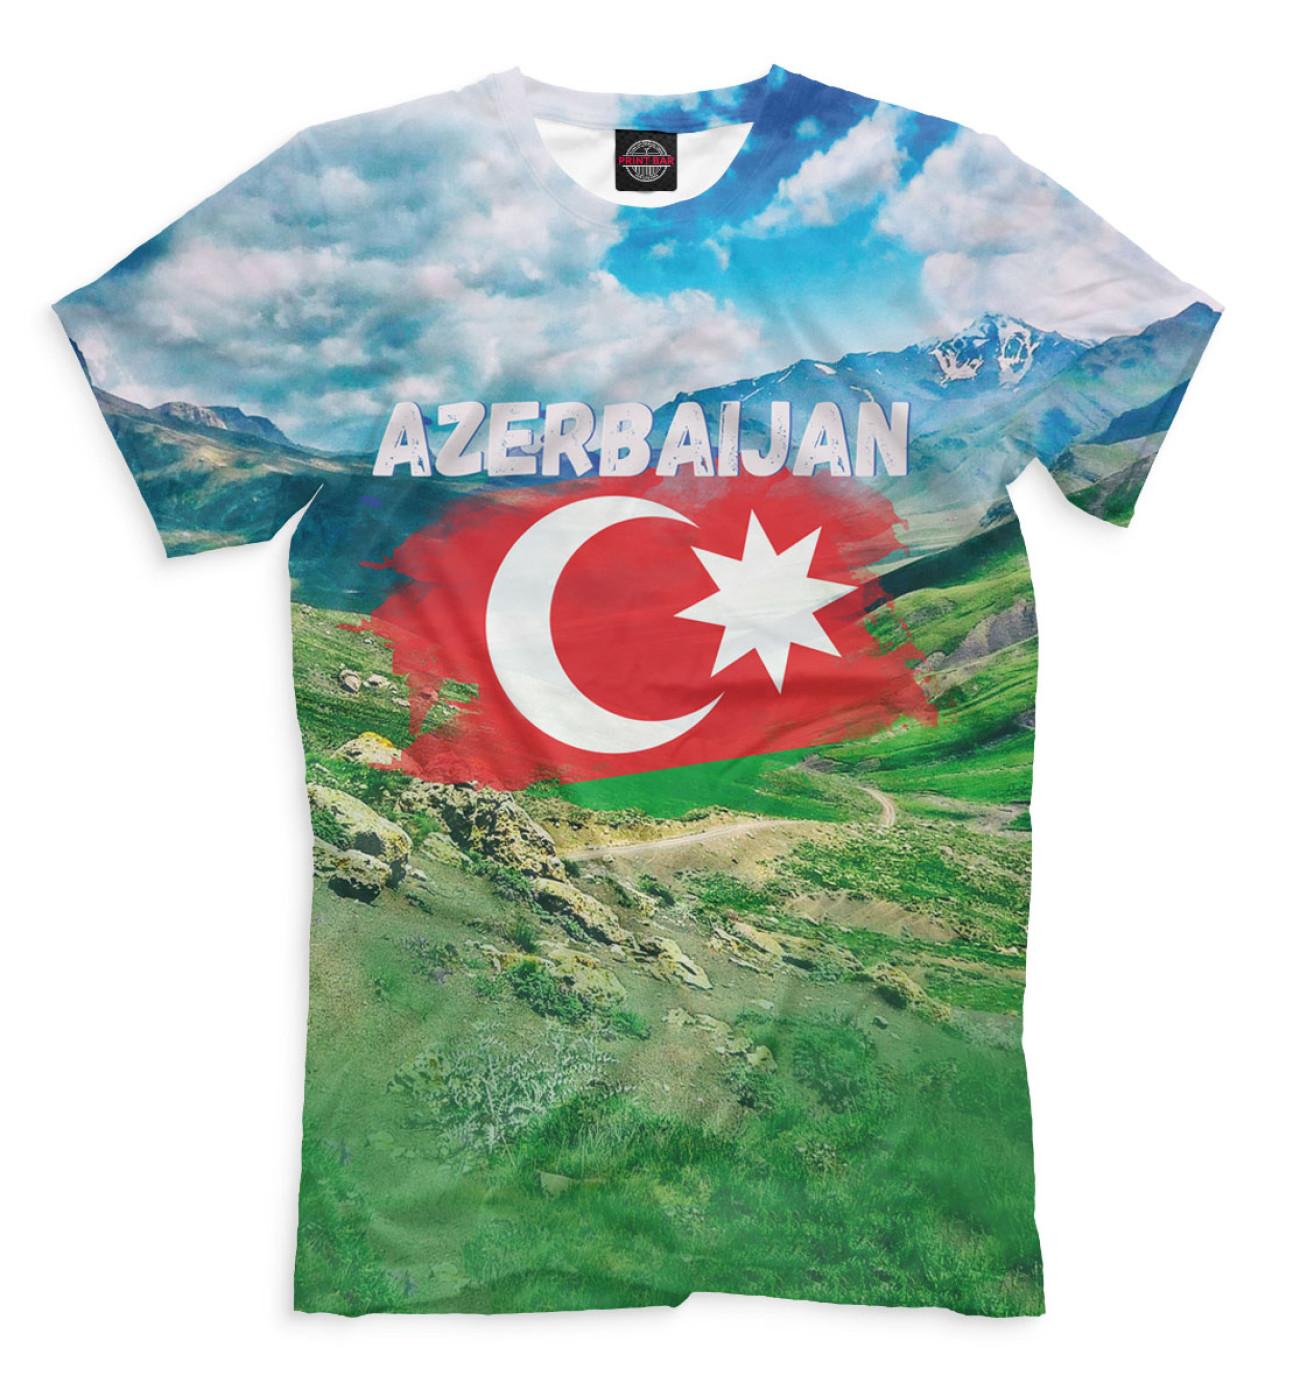 Мужская Футболка Азербайджан, артикул: CTS-724615-fut-2